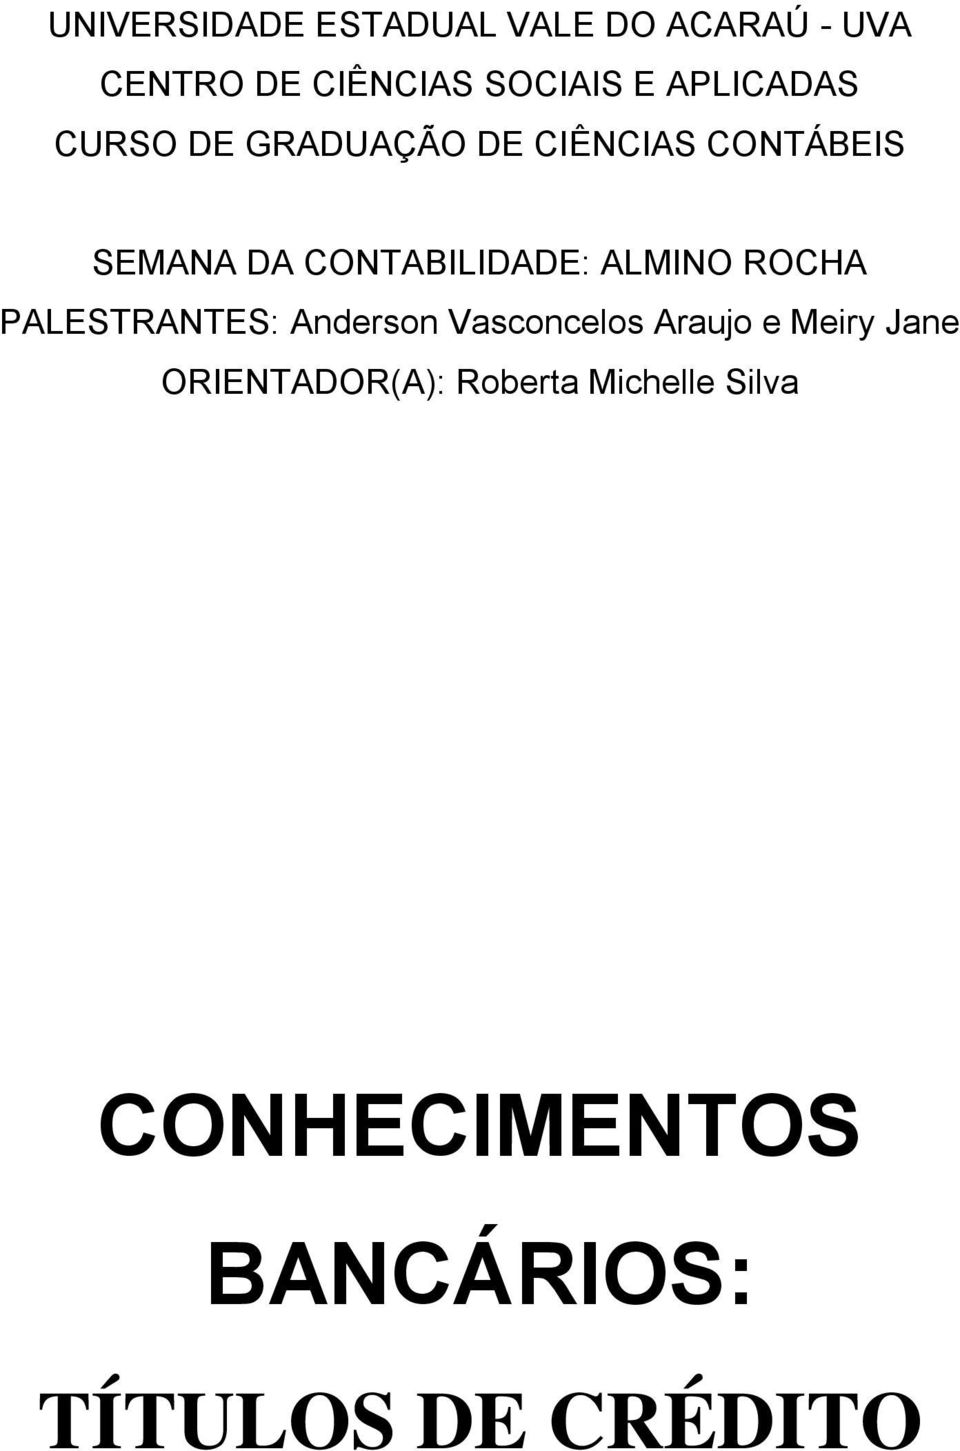 CONTABILIDADE: ALMINO ROCHA PALESTRANTES: Anderson Vasconcelos Araujo e